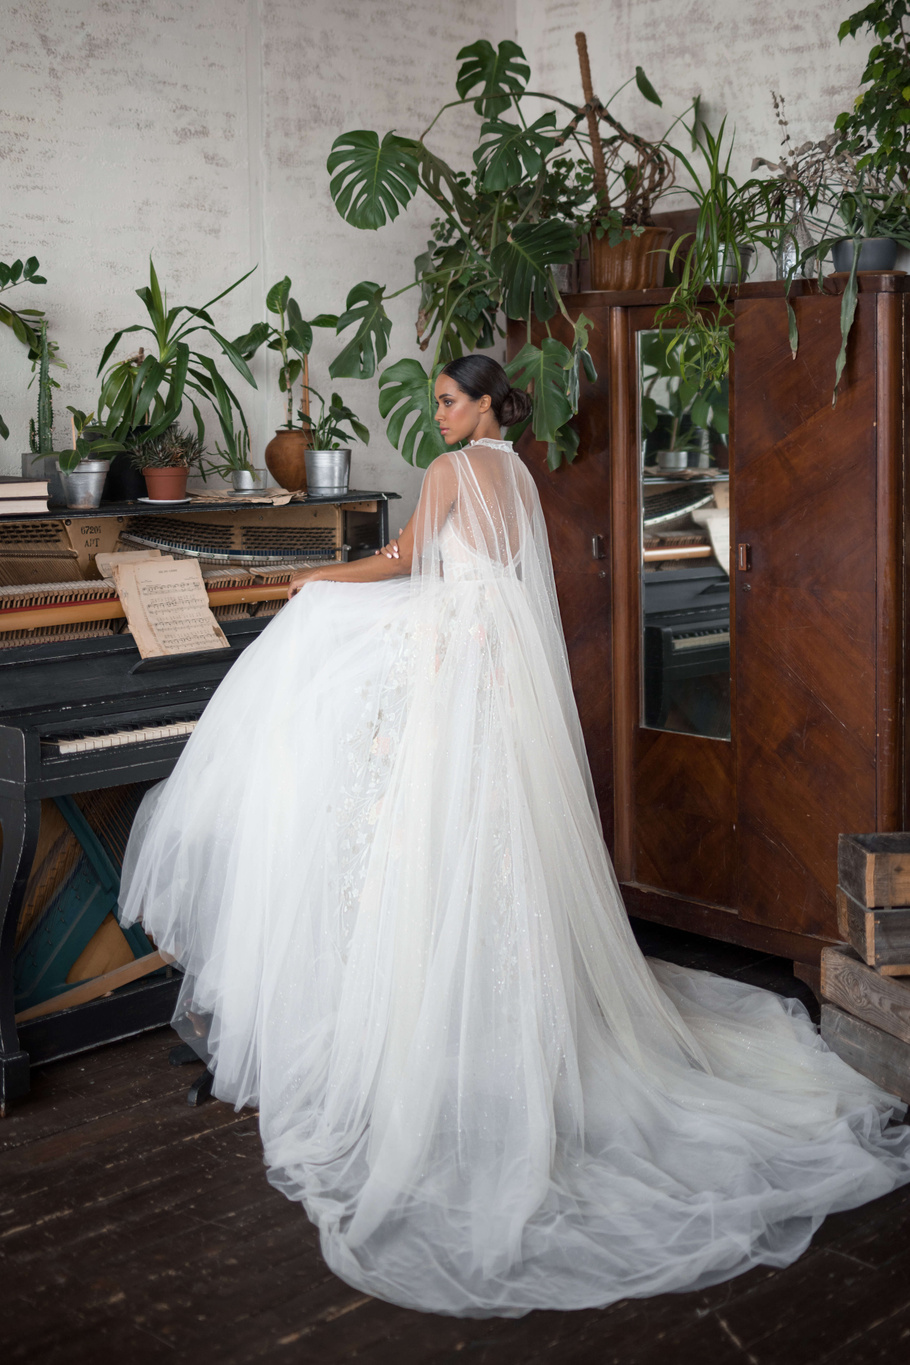 Купить свадебное платье «Санни» Бламмо Биамо из коллекции Нимфа 2020 года в Москве